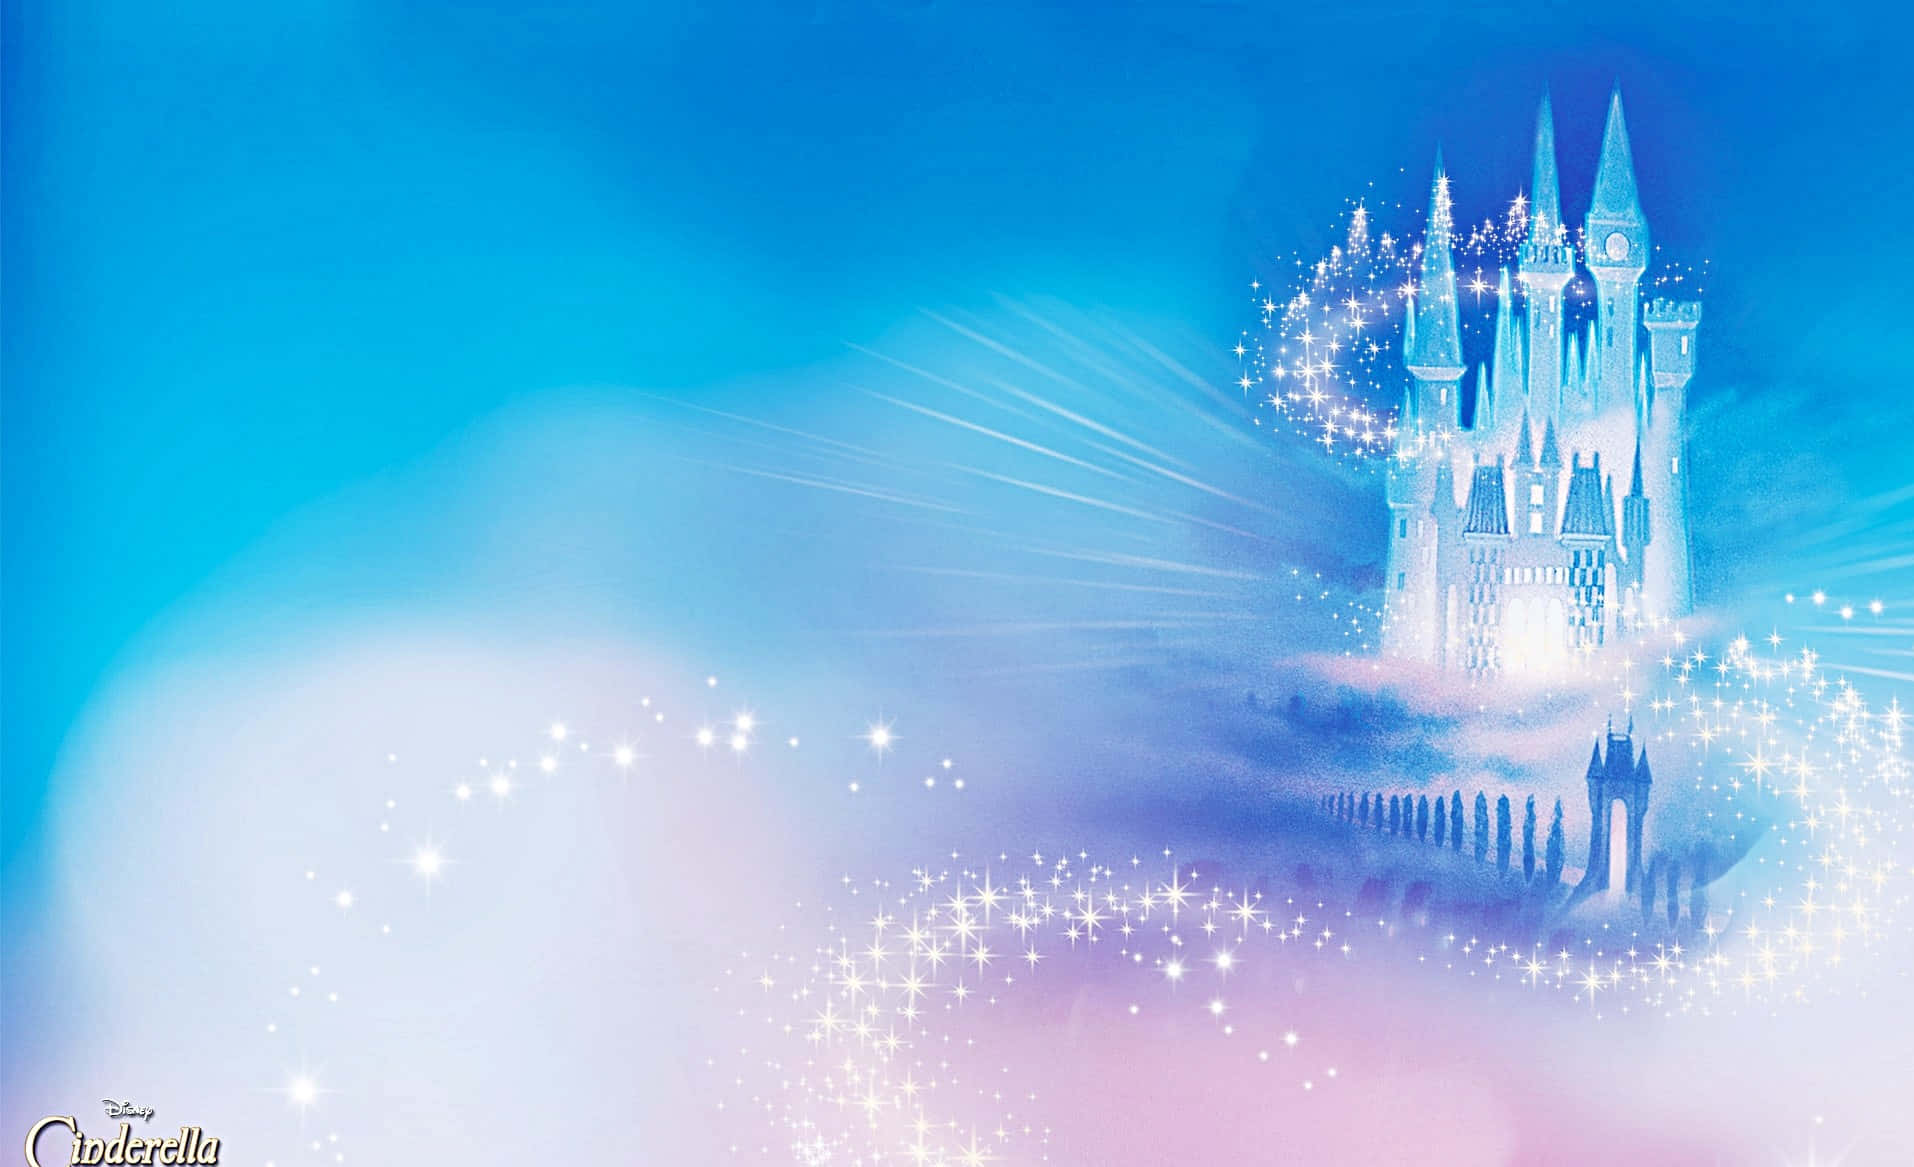 Observael Encantador Castillo De Disney En Toda Su Belleza